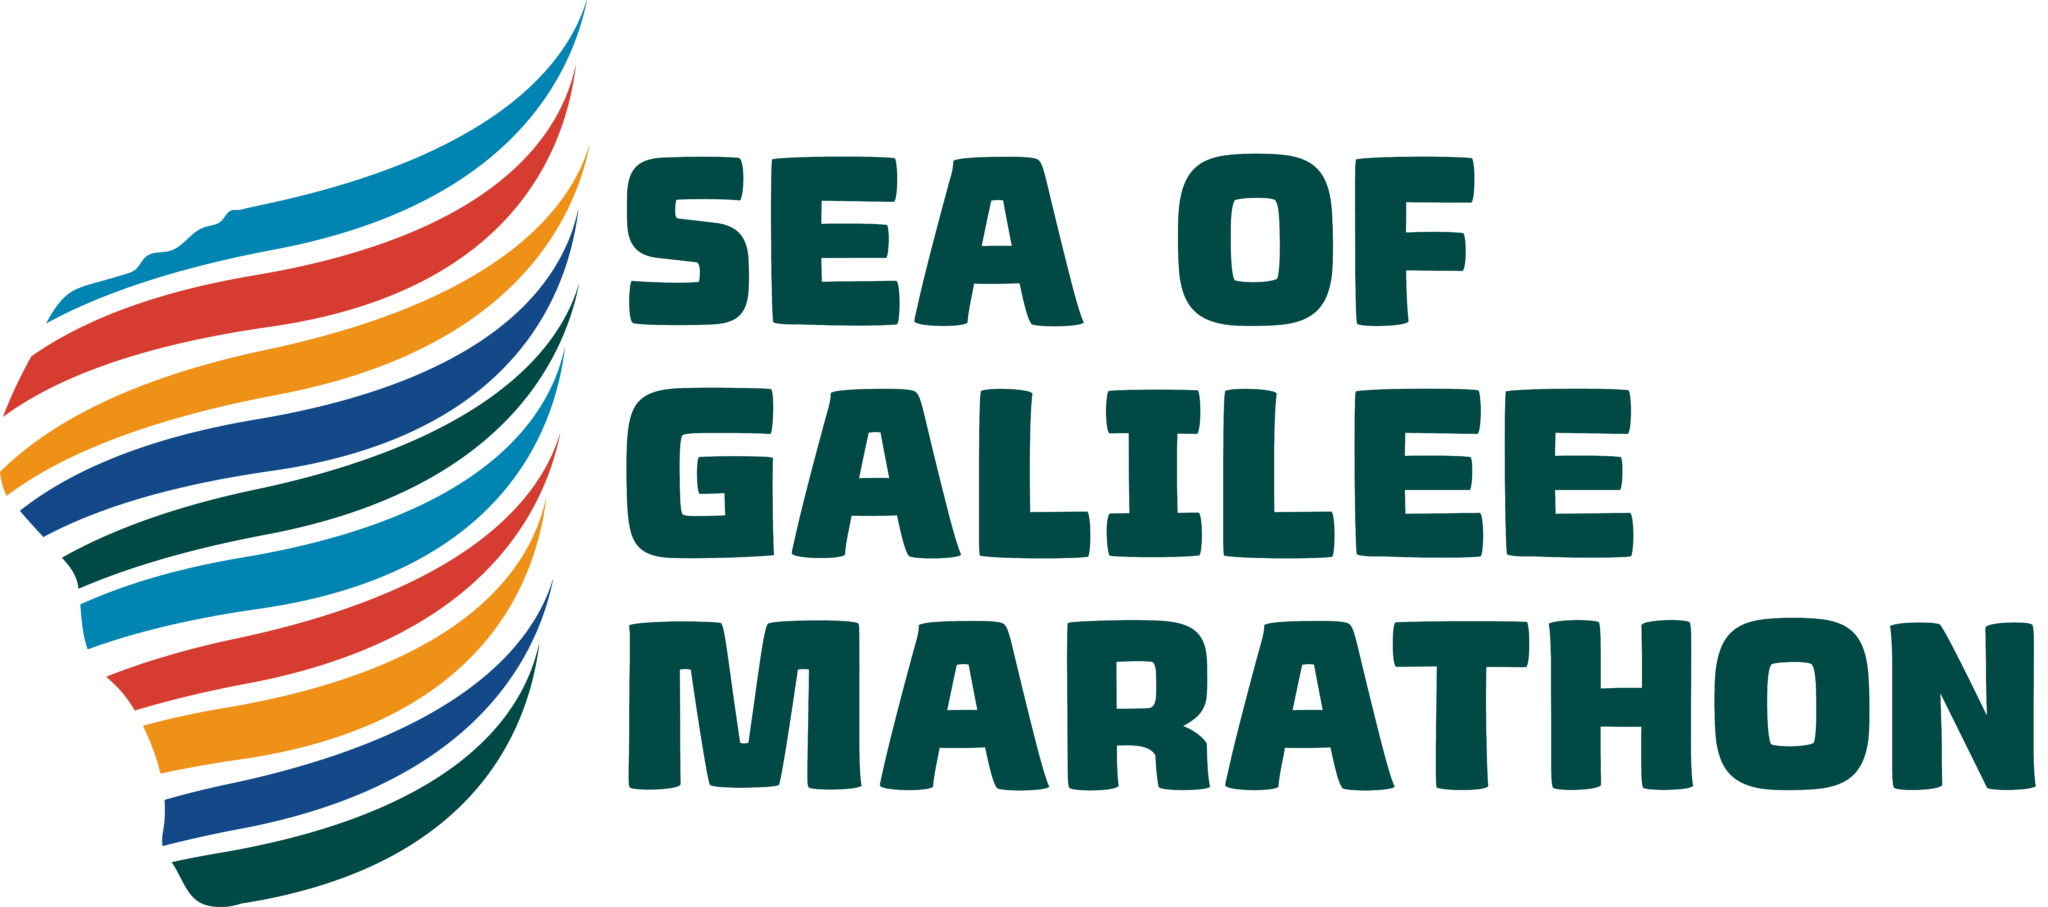 Tiberias Sea of Galilee Marathon logo on RaceRaves